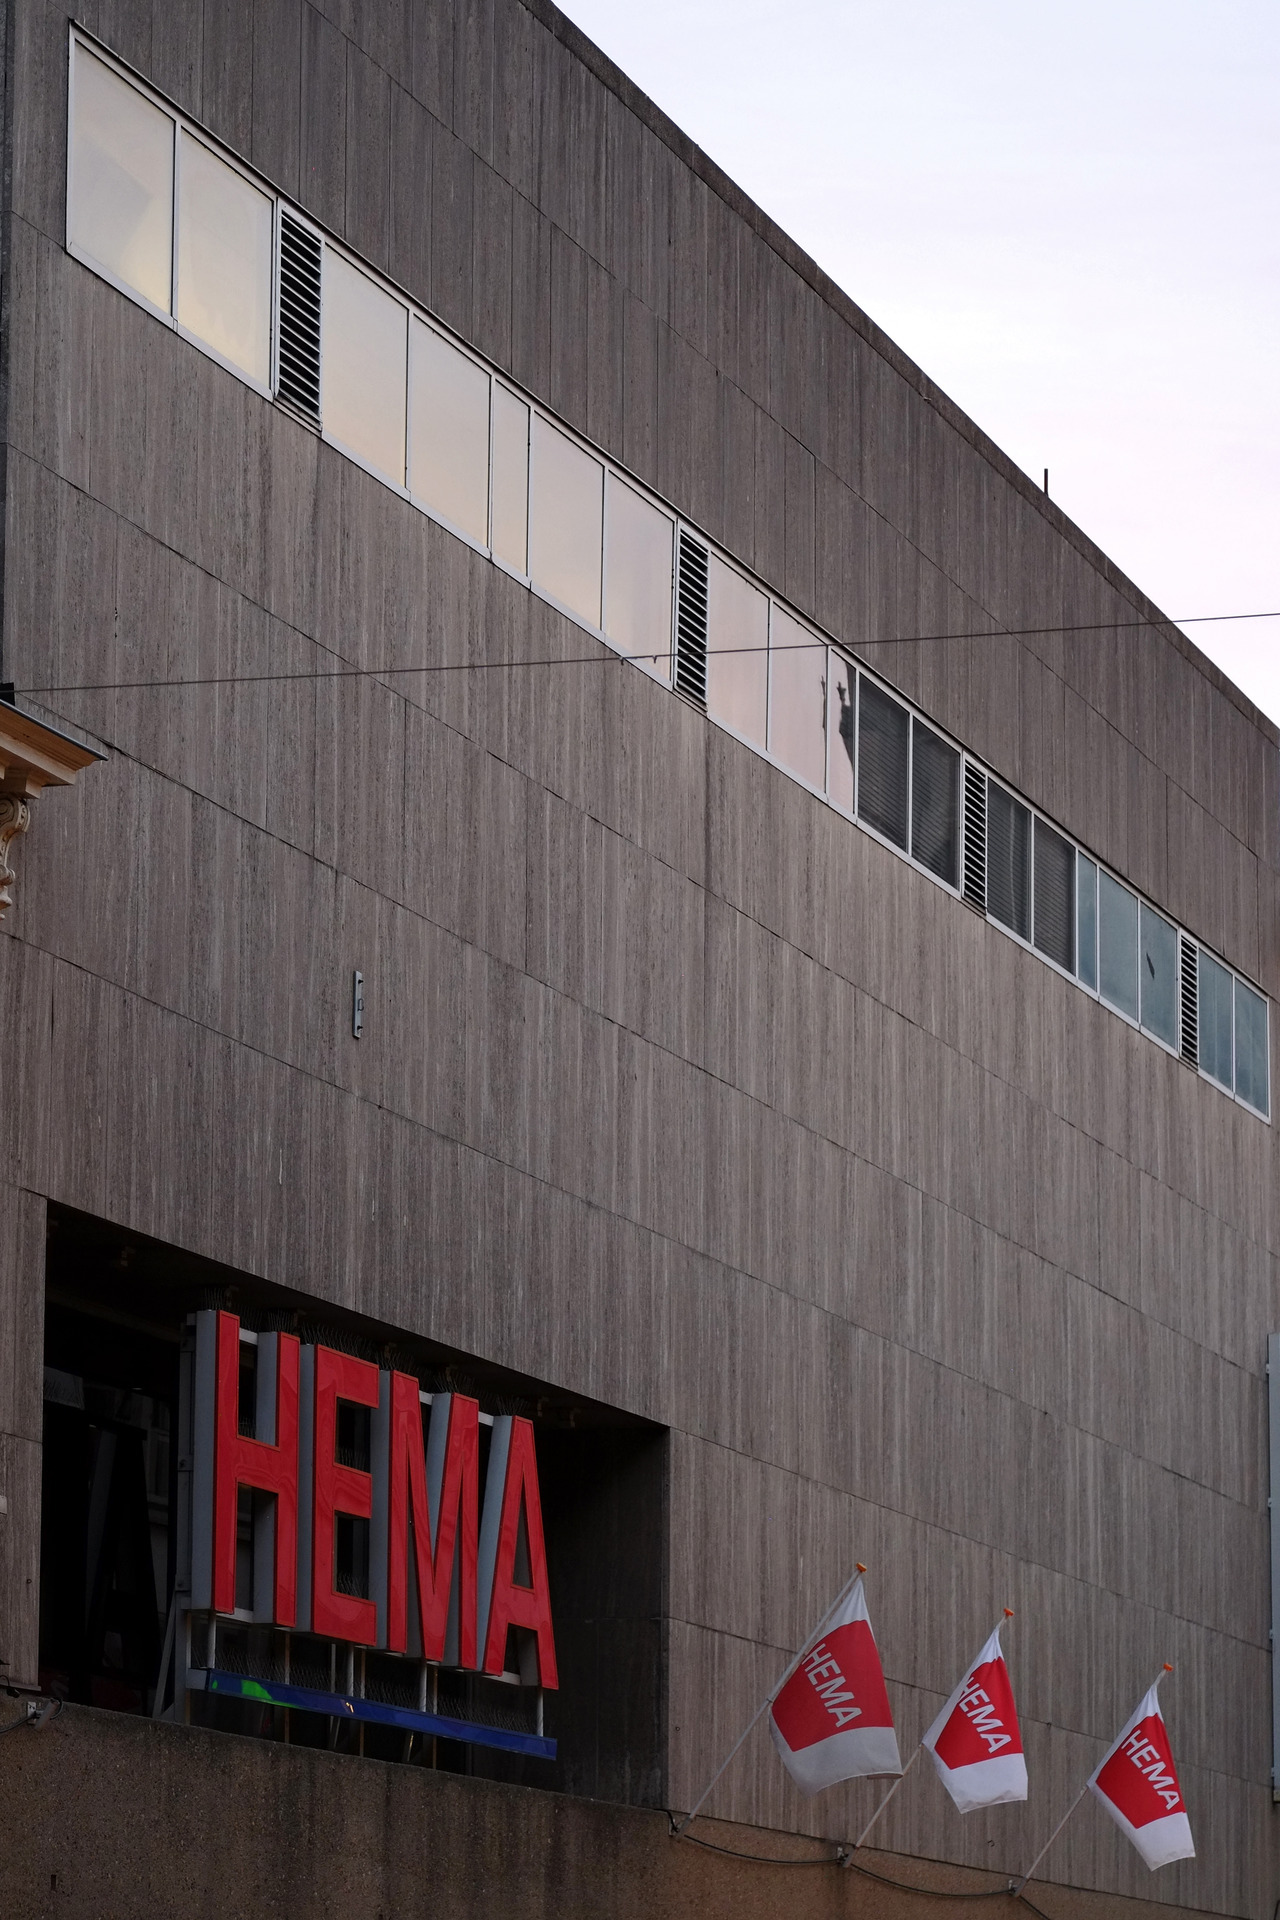 Nieuw Hema department store. Eindhoven, October 2018… – Abandoned WT-51